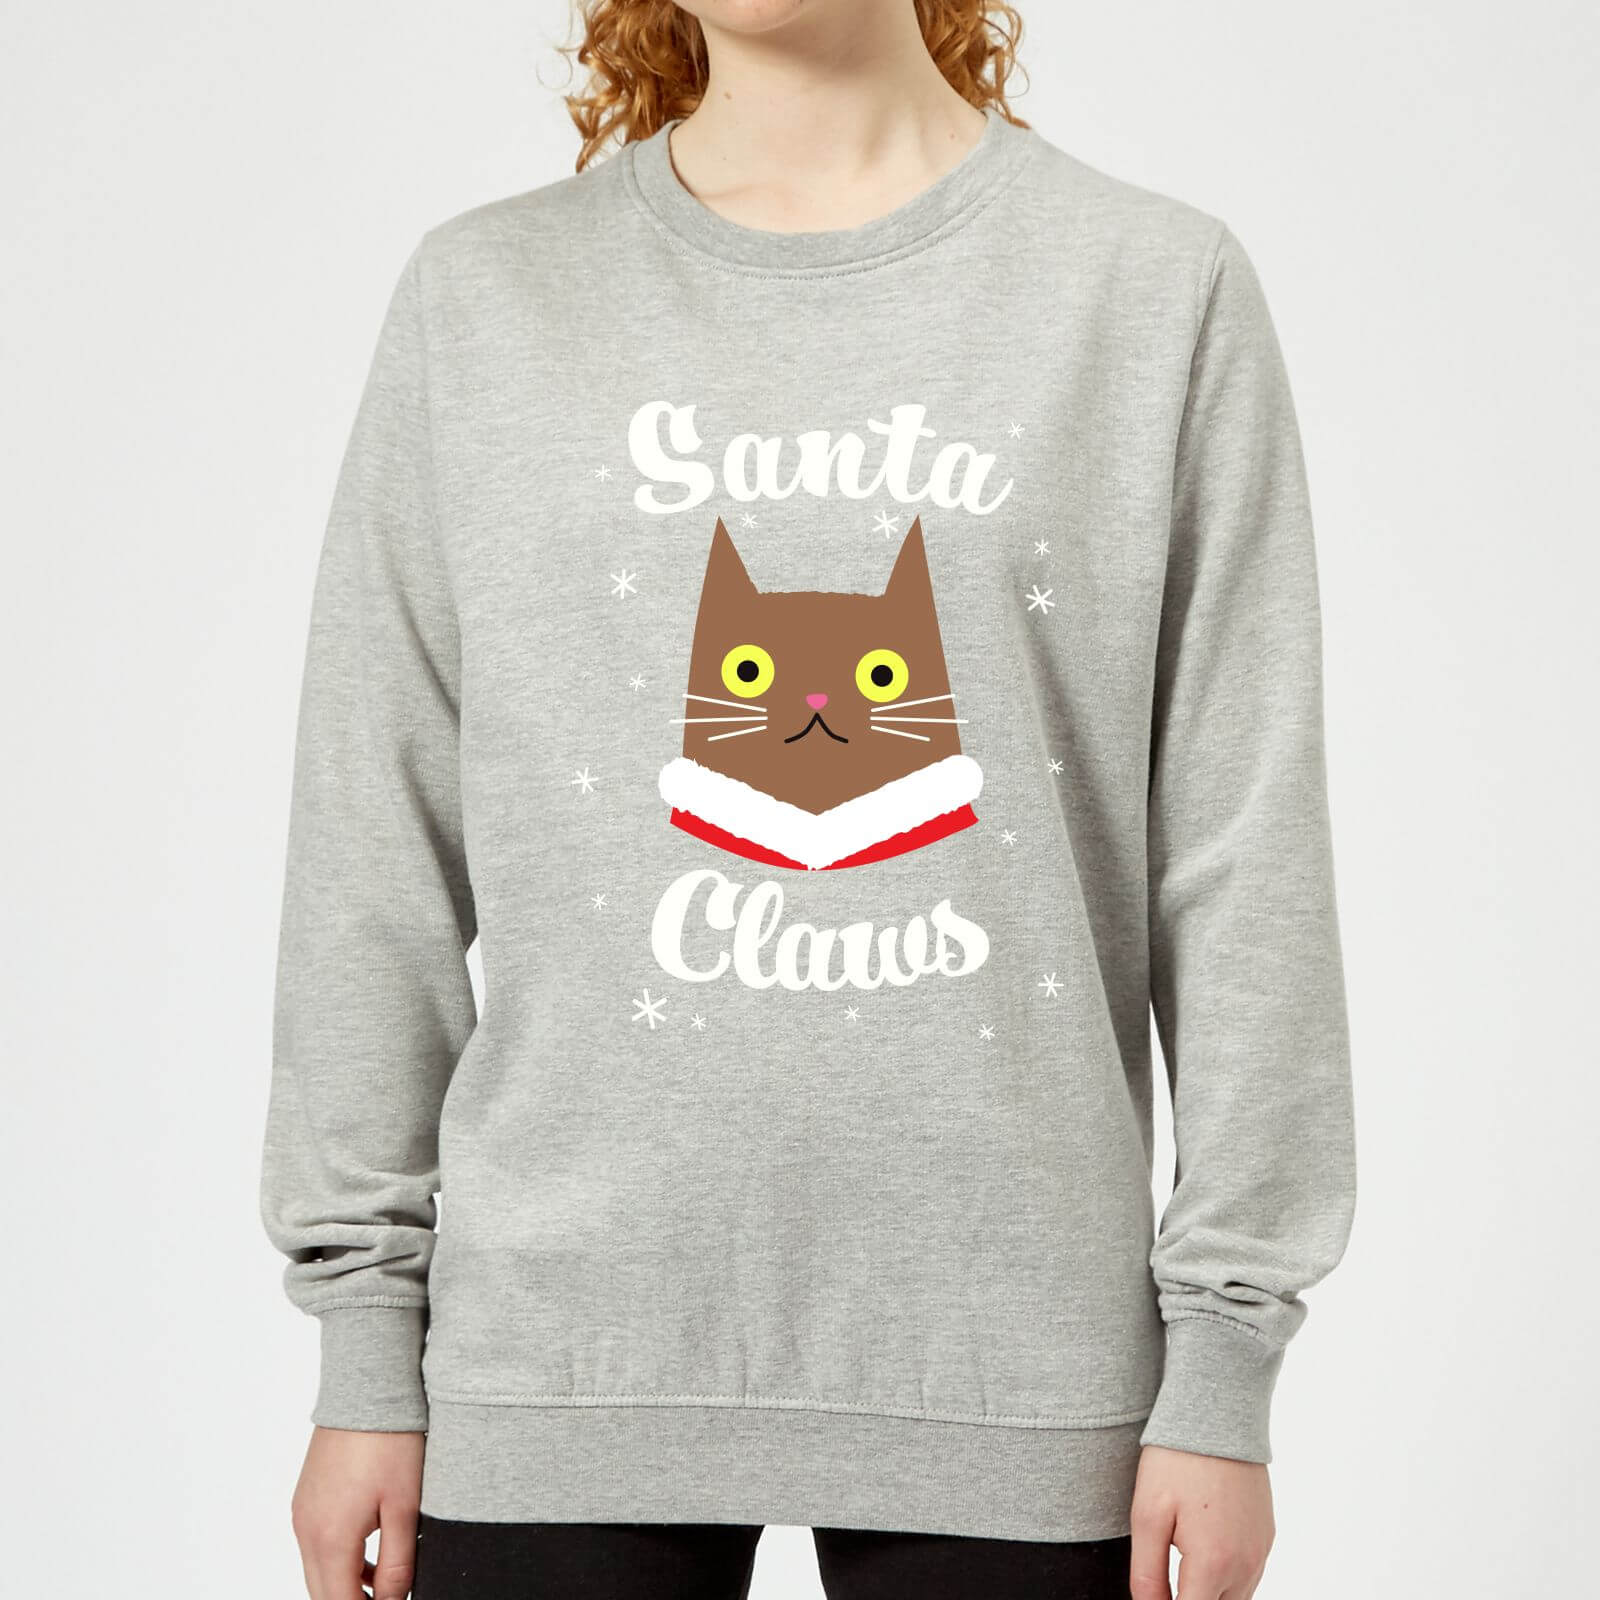 Santa Claws Frauen Sweatshirt - Grau - L